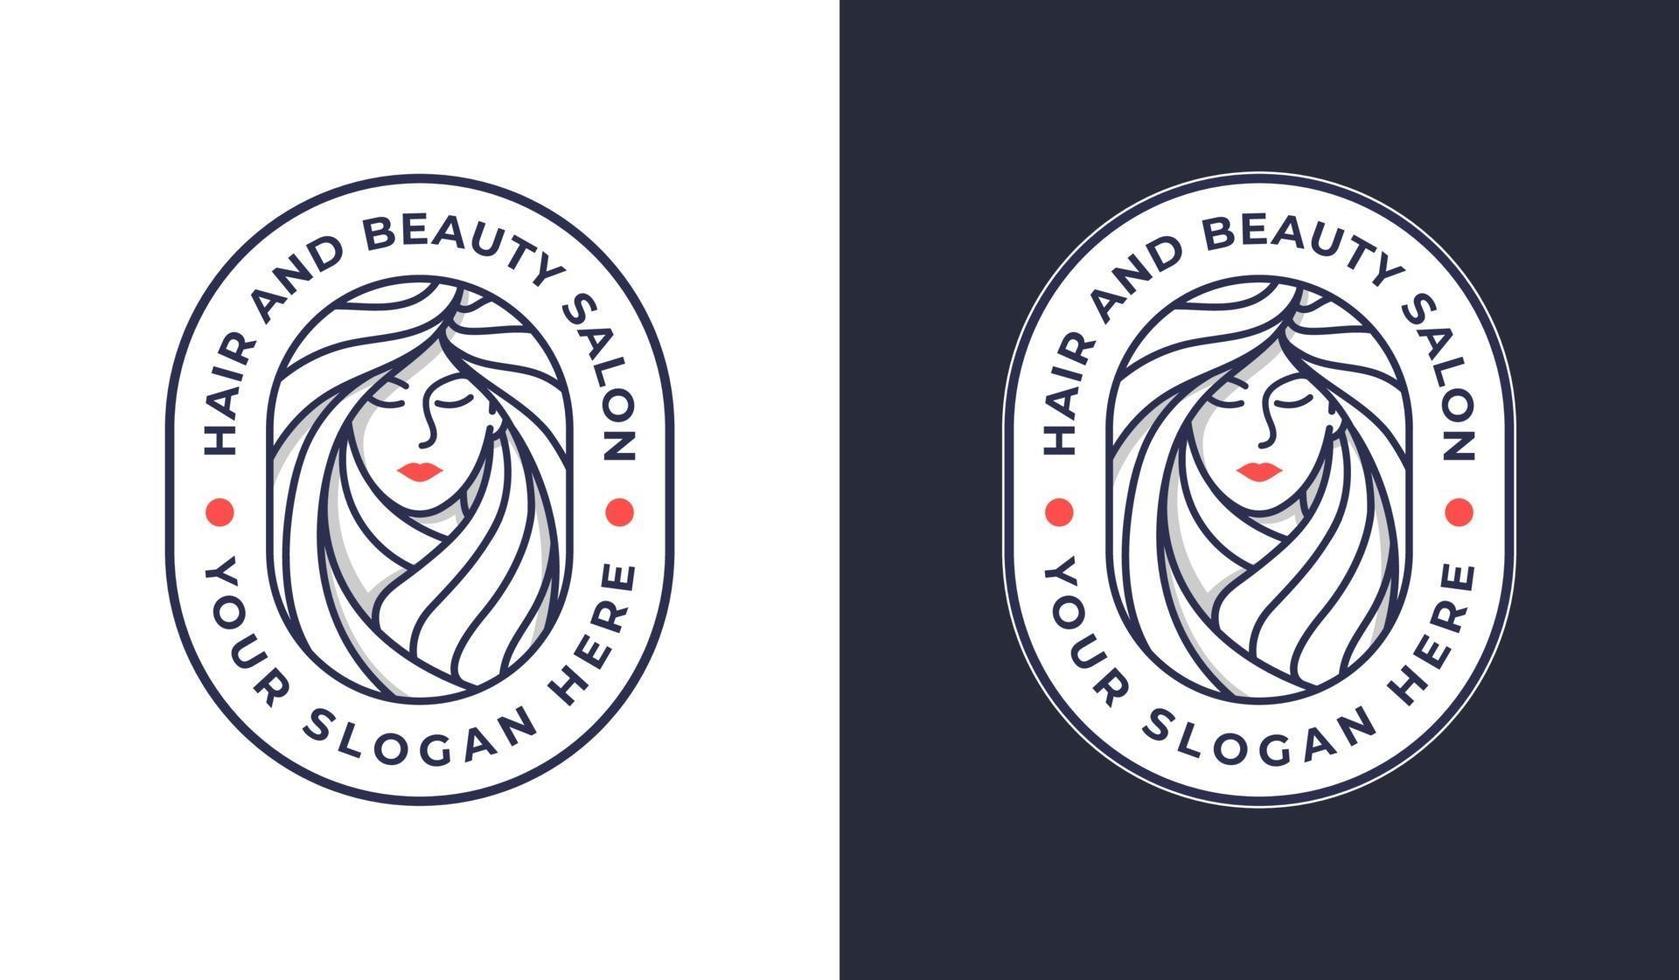 vrouw kapsalon logo badge ontwerp in 2 kleuren vector